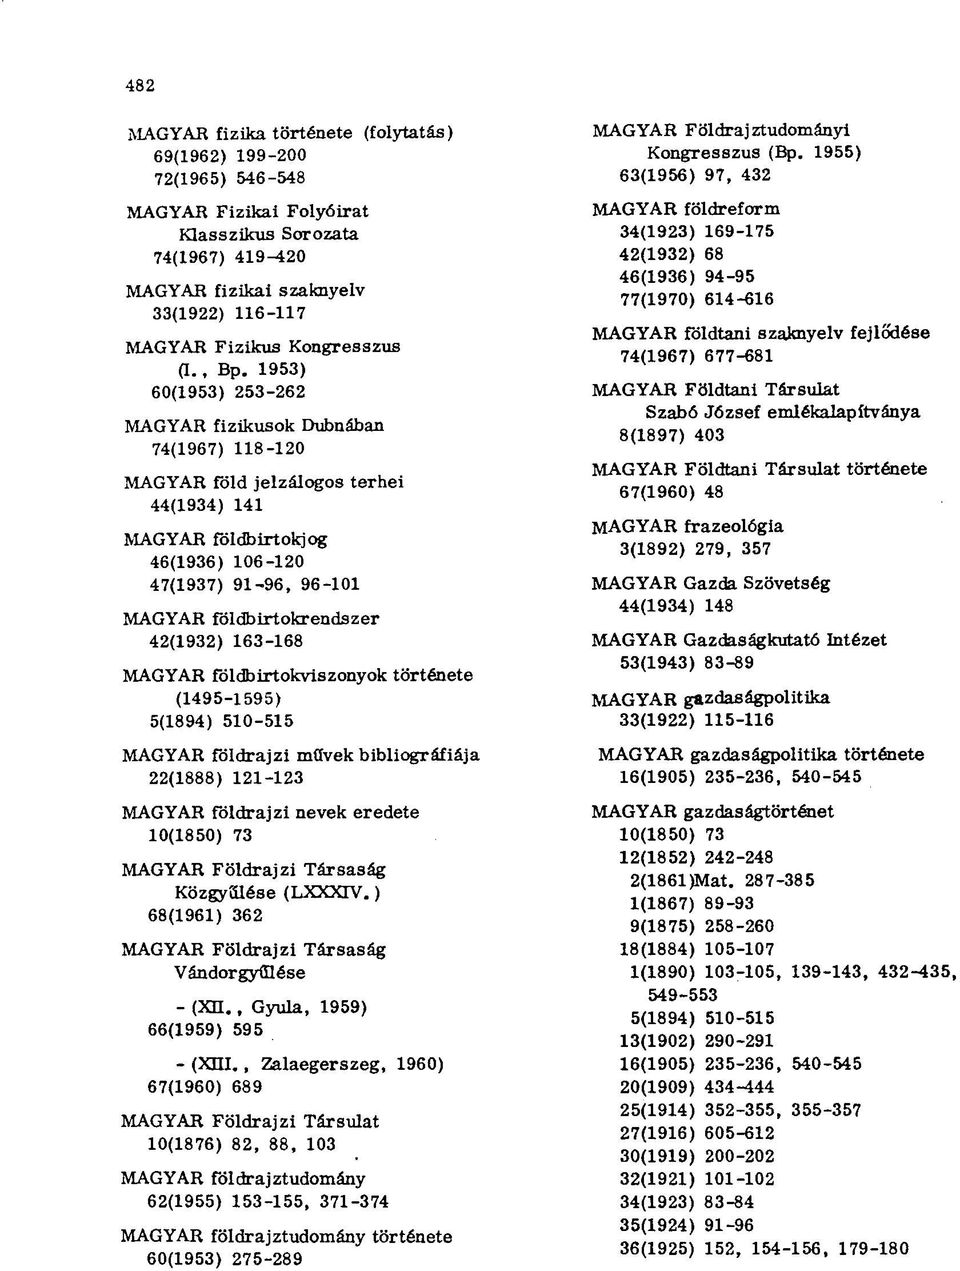 1953) 60(1953) 253-262 MAGYAR fizikusok Dubnában 74(1967) 118-120 MAGYAR fold jelzálogos terhei 44(1934) 141 MAGYAR földbirtokjog 46(1936) 106-120 47(1937) 91-96, 96-101 MAGYAR földbirtokrendszer